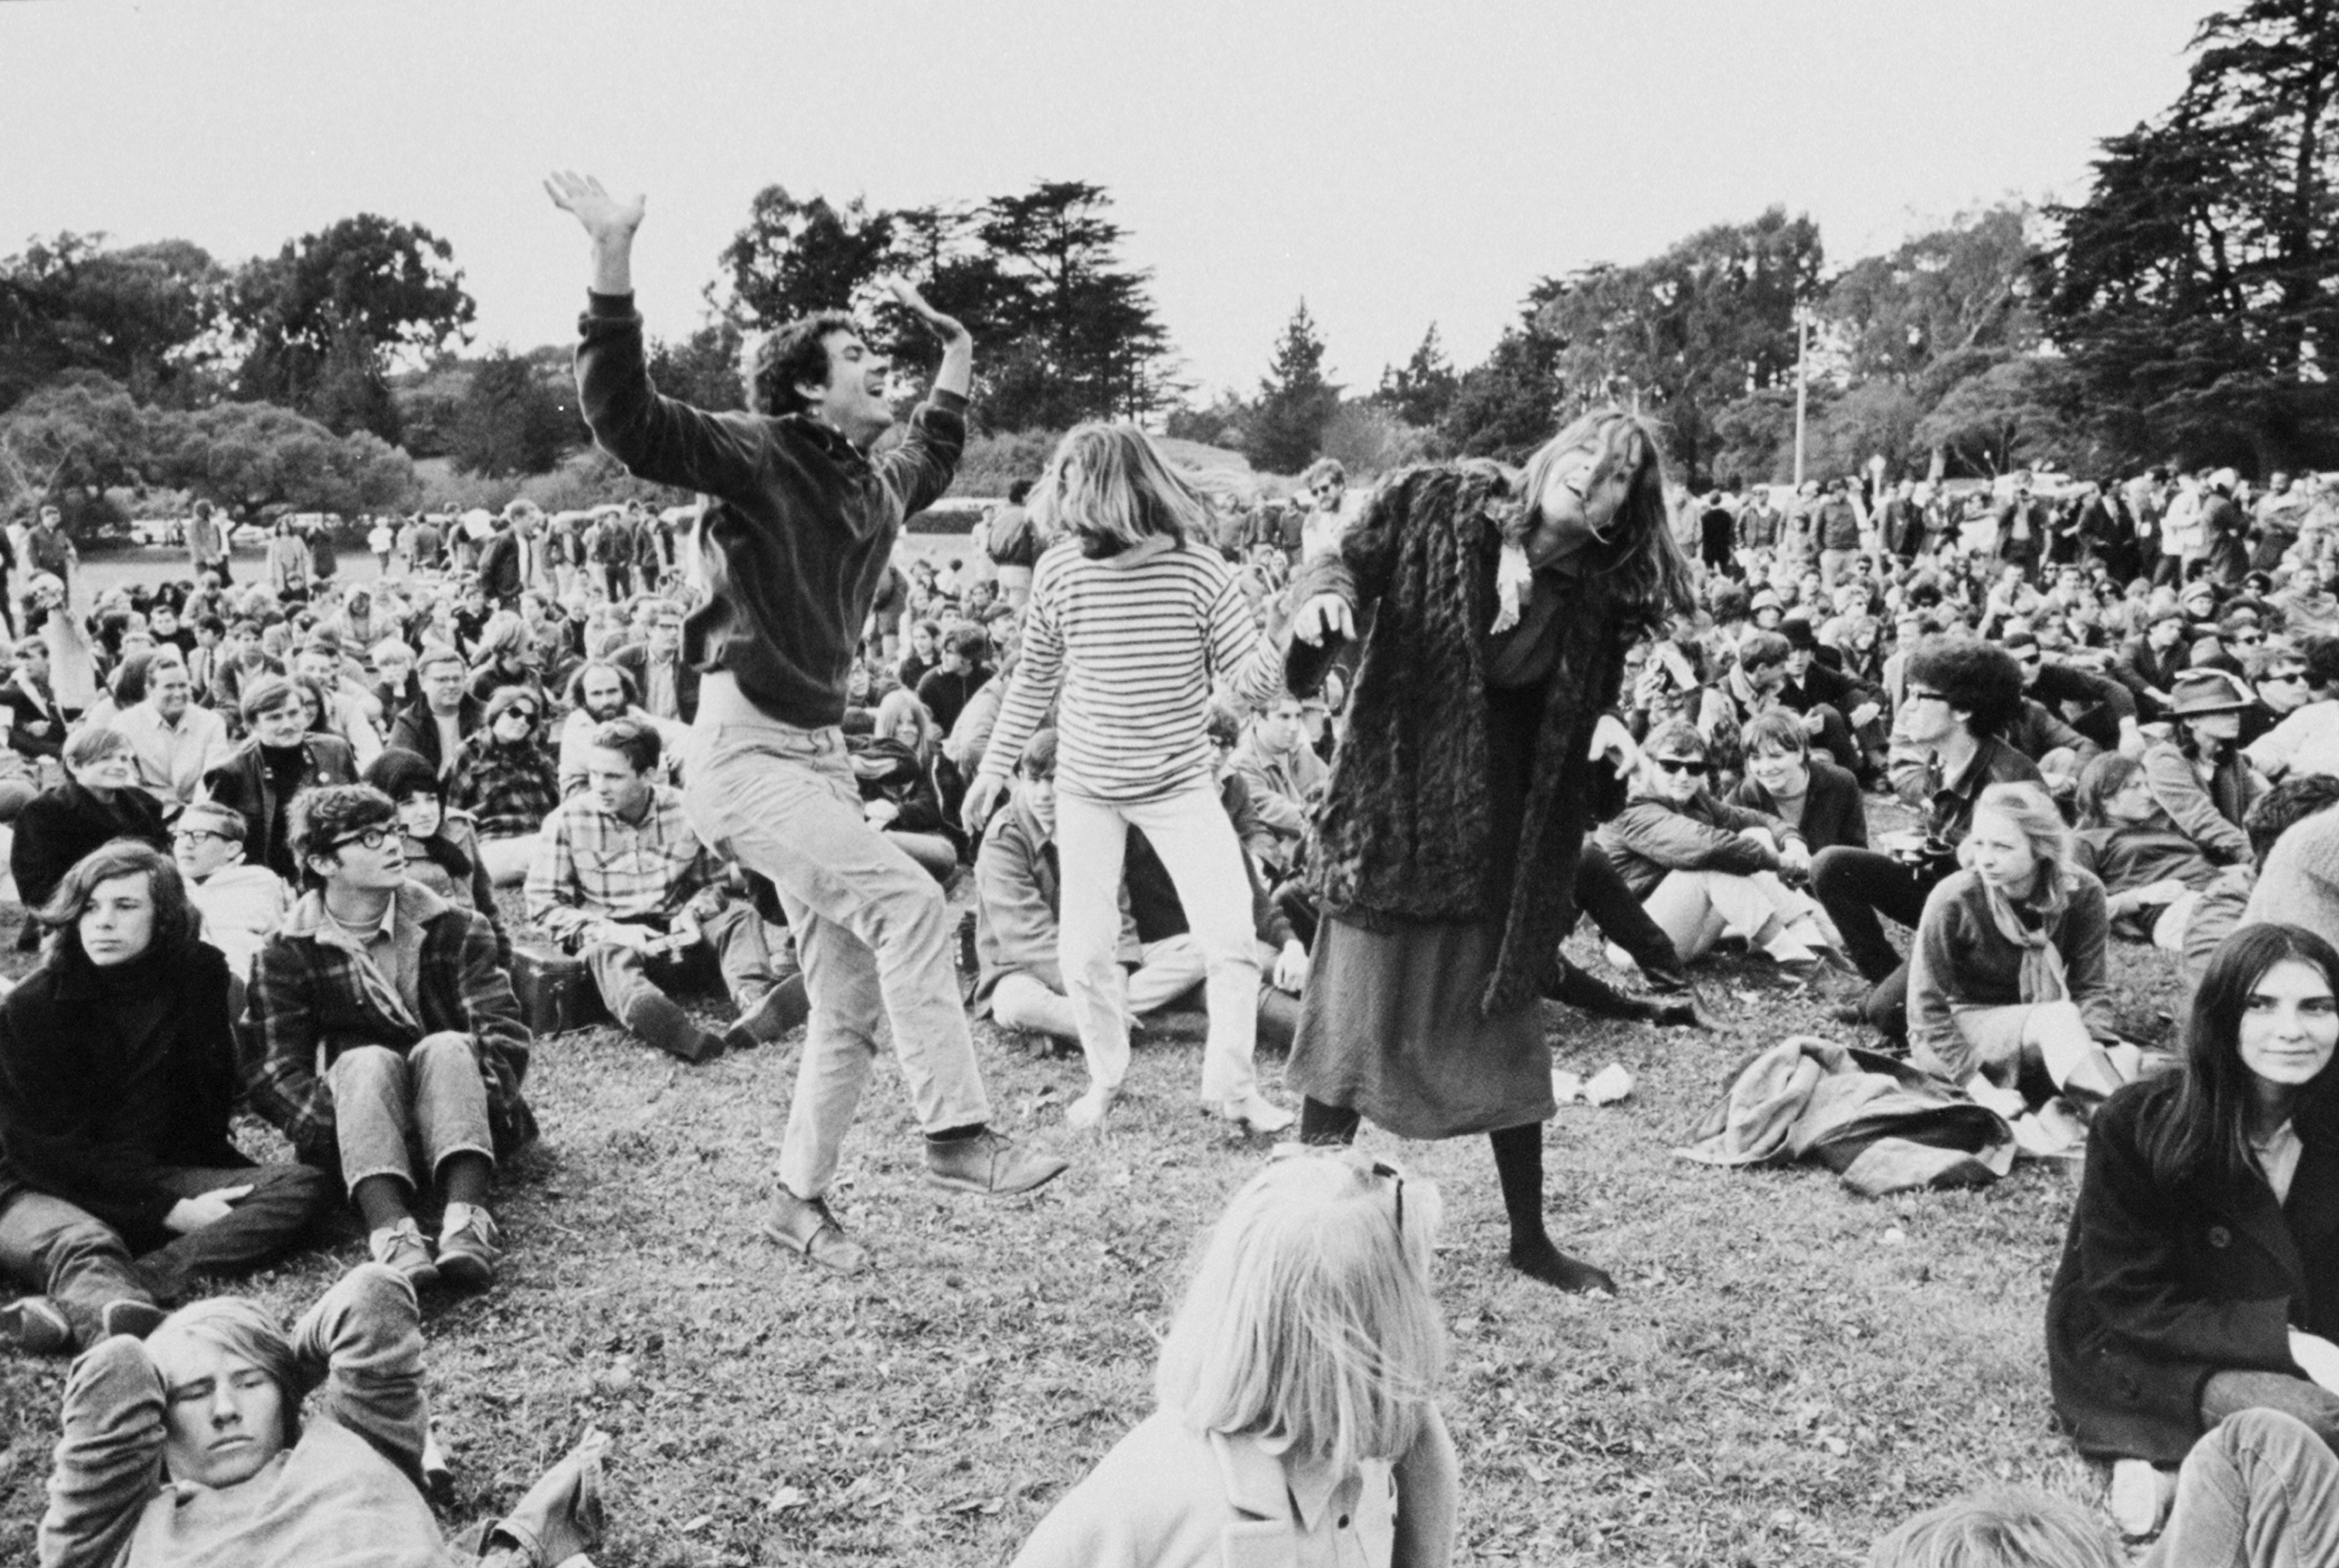 Danny Goldberg Talks 'Hippie Idea,' New Counterculture Book – Rolling Stone